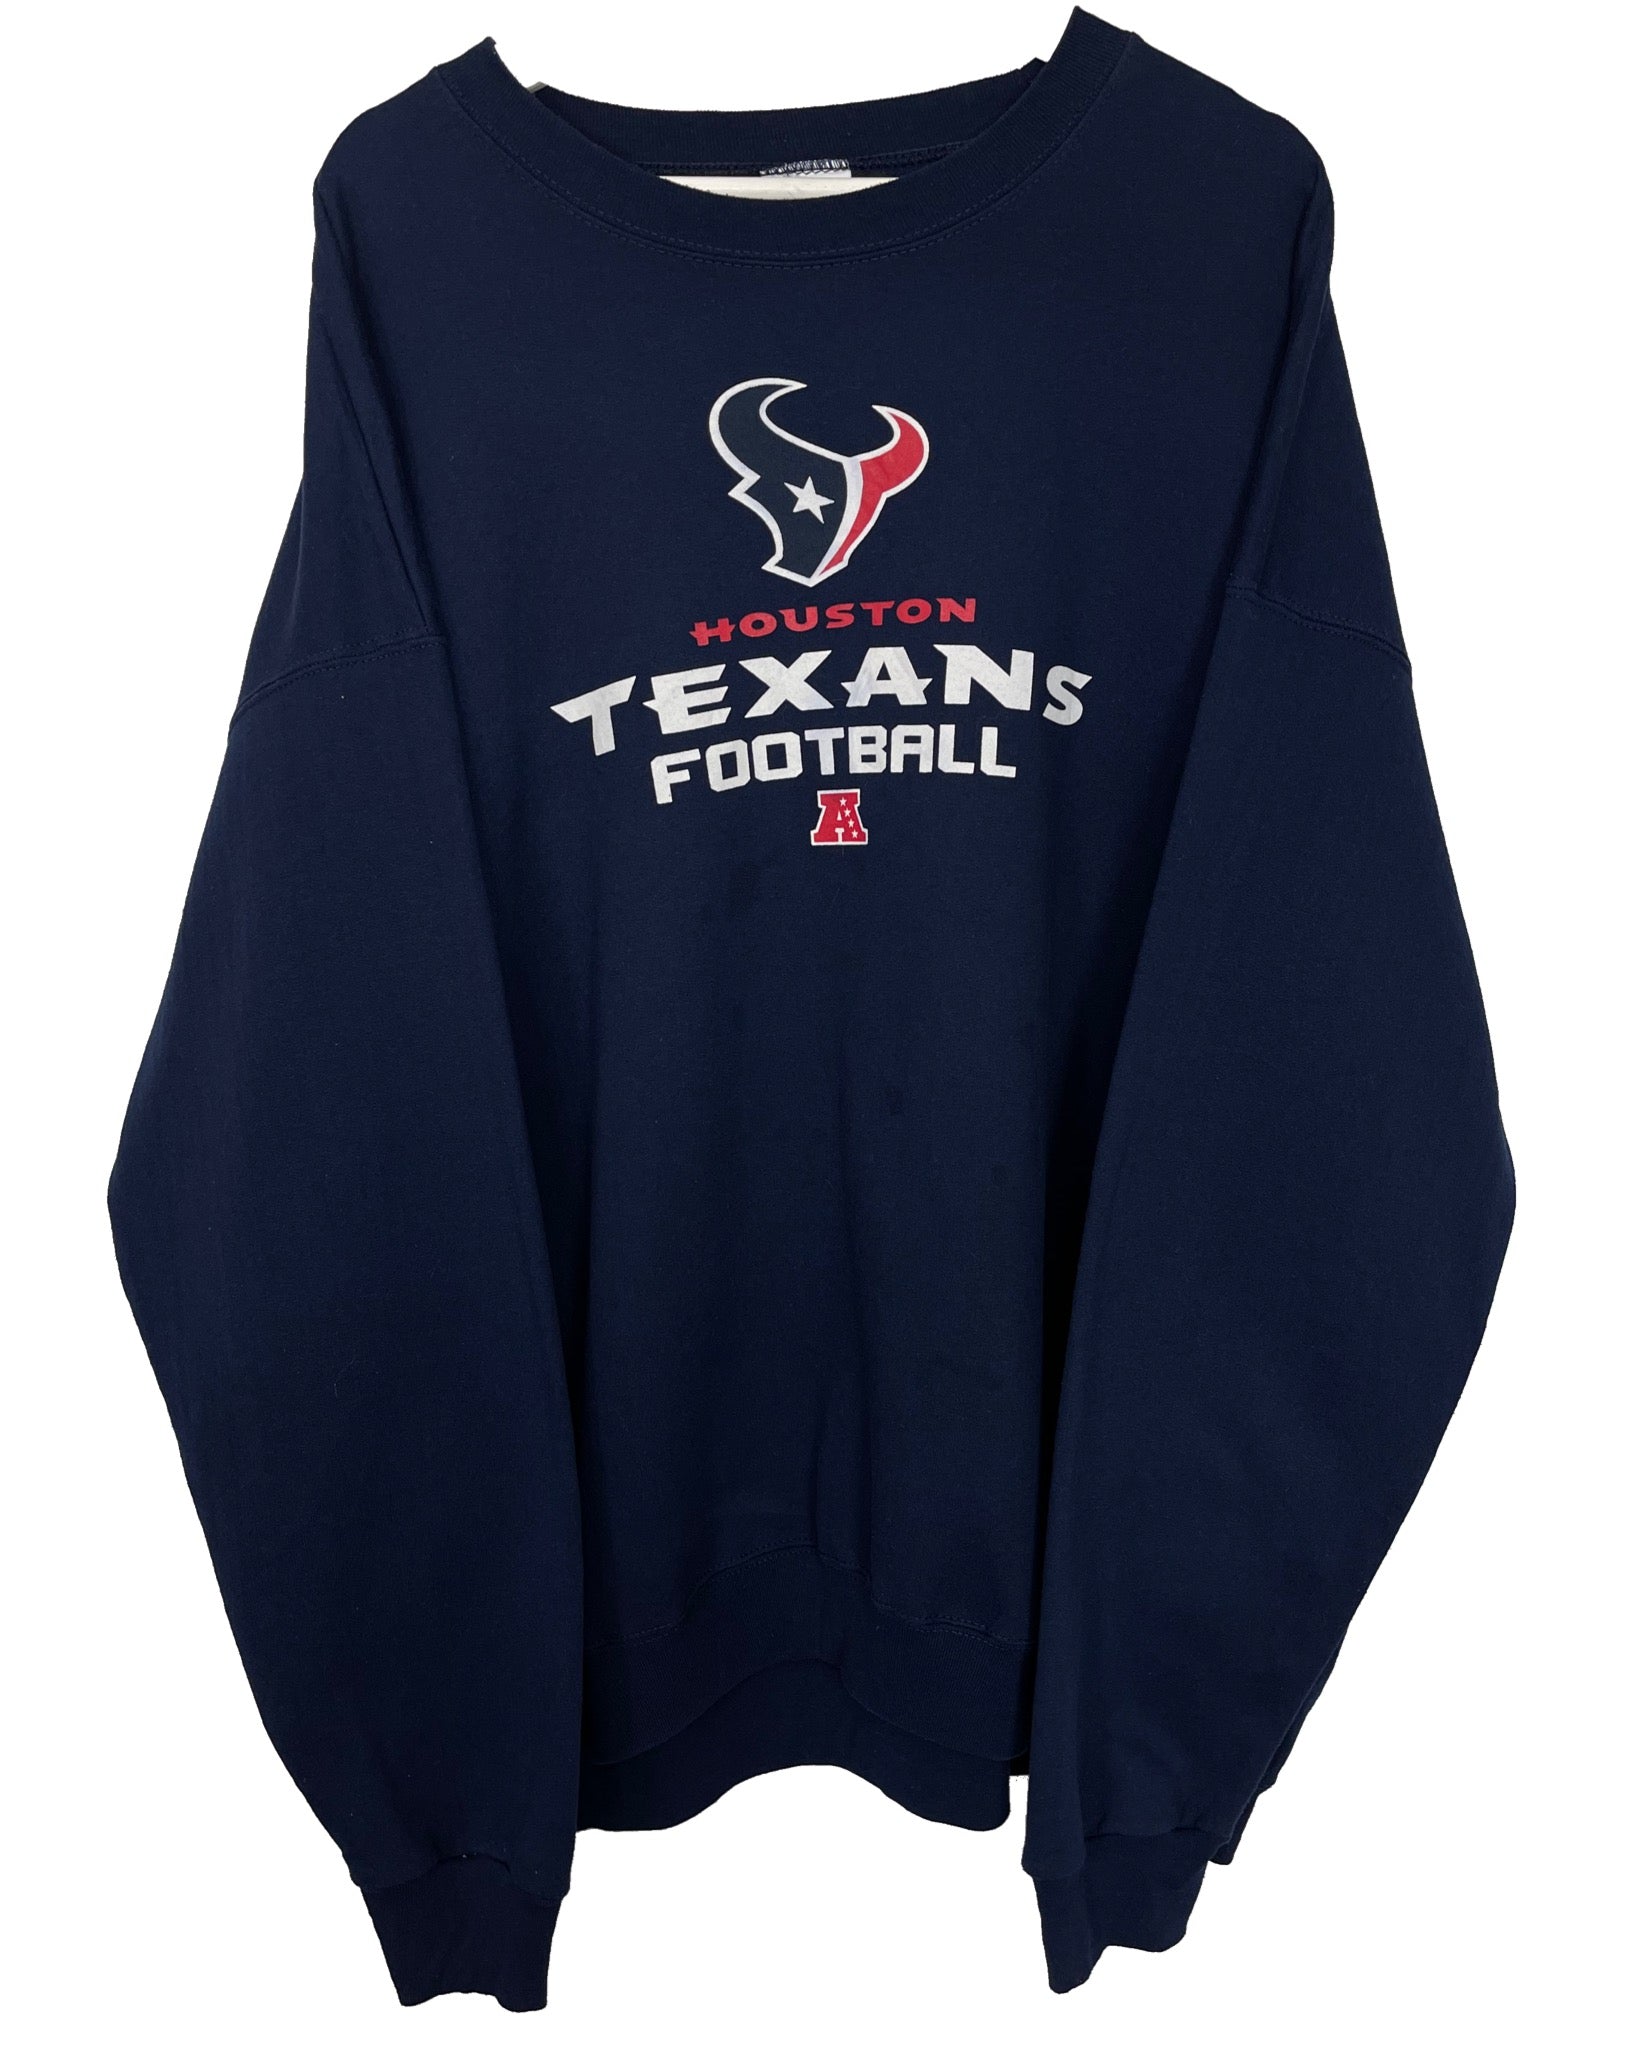  Sweatshirt NFL Sweat - Houston Texans - XL - PLOMOSTORE